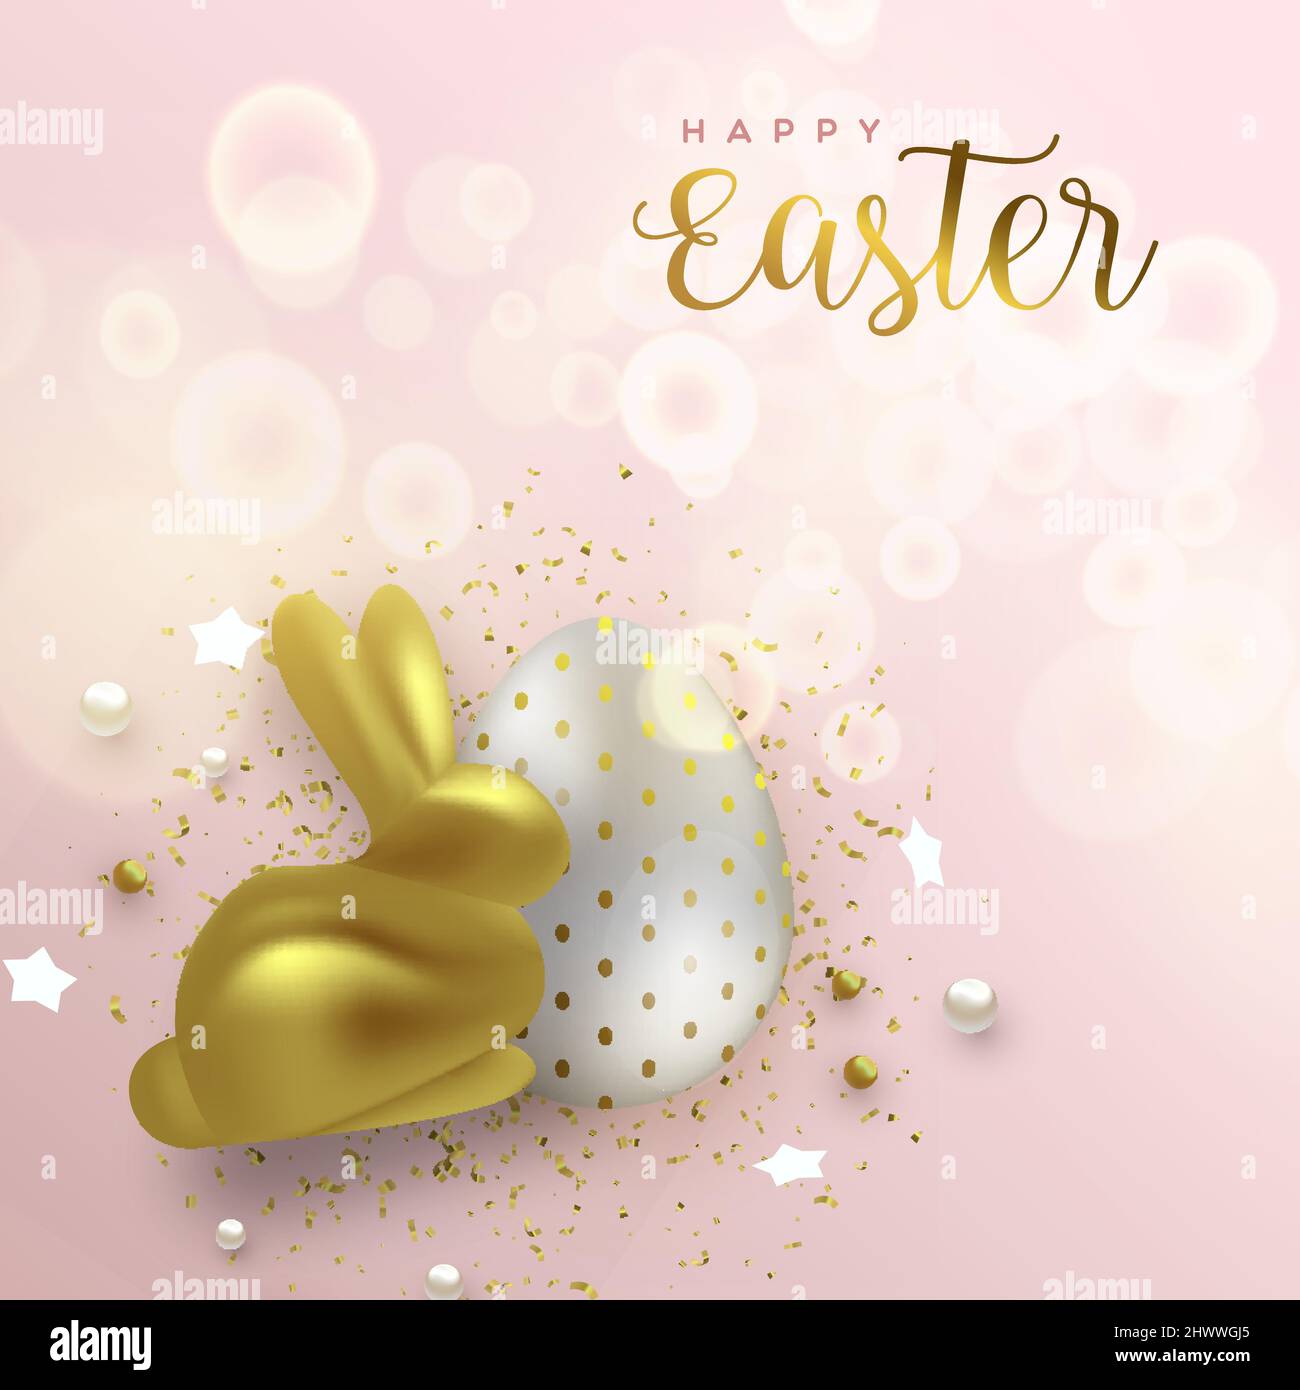 Ilustración de tarjeta de felicitación de lujo de Pascua feliz. Conejo de oro realista de 3D con huevo para el tradicional evento de celebración de las vacaciones de primavera. Ilustración del Vector